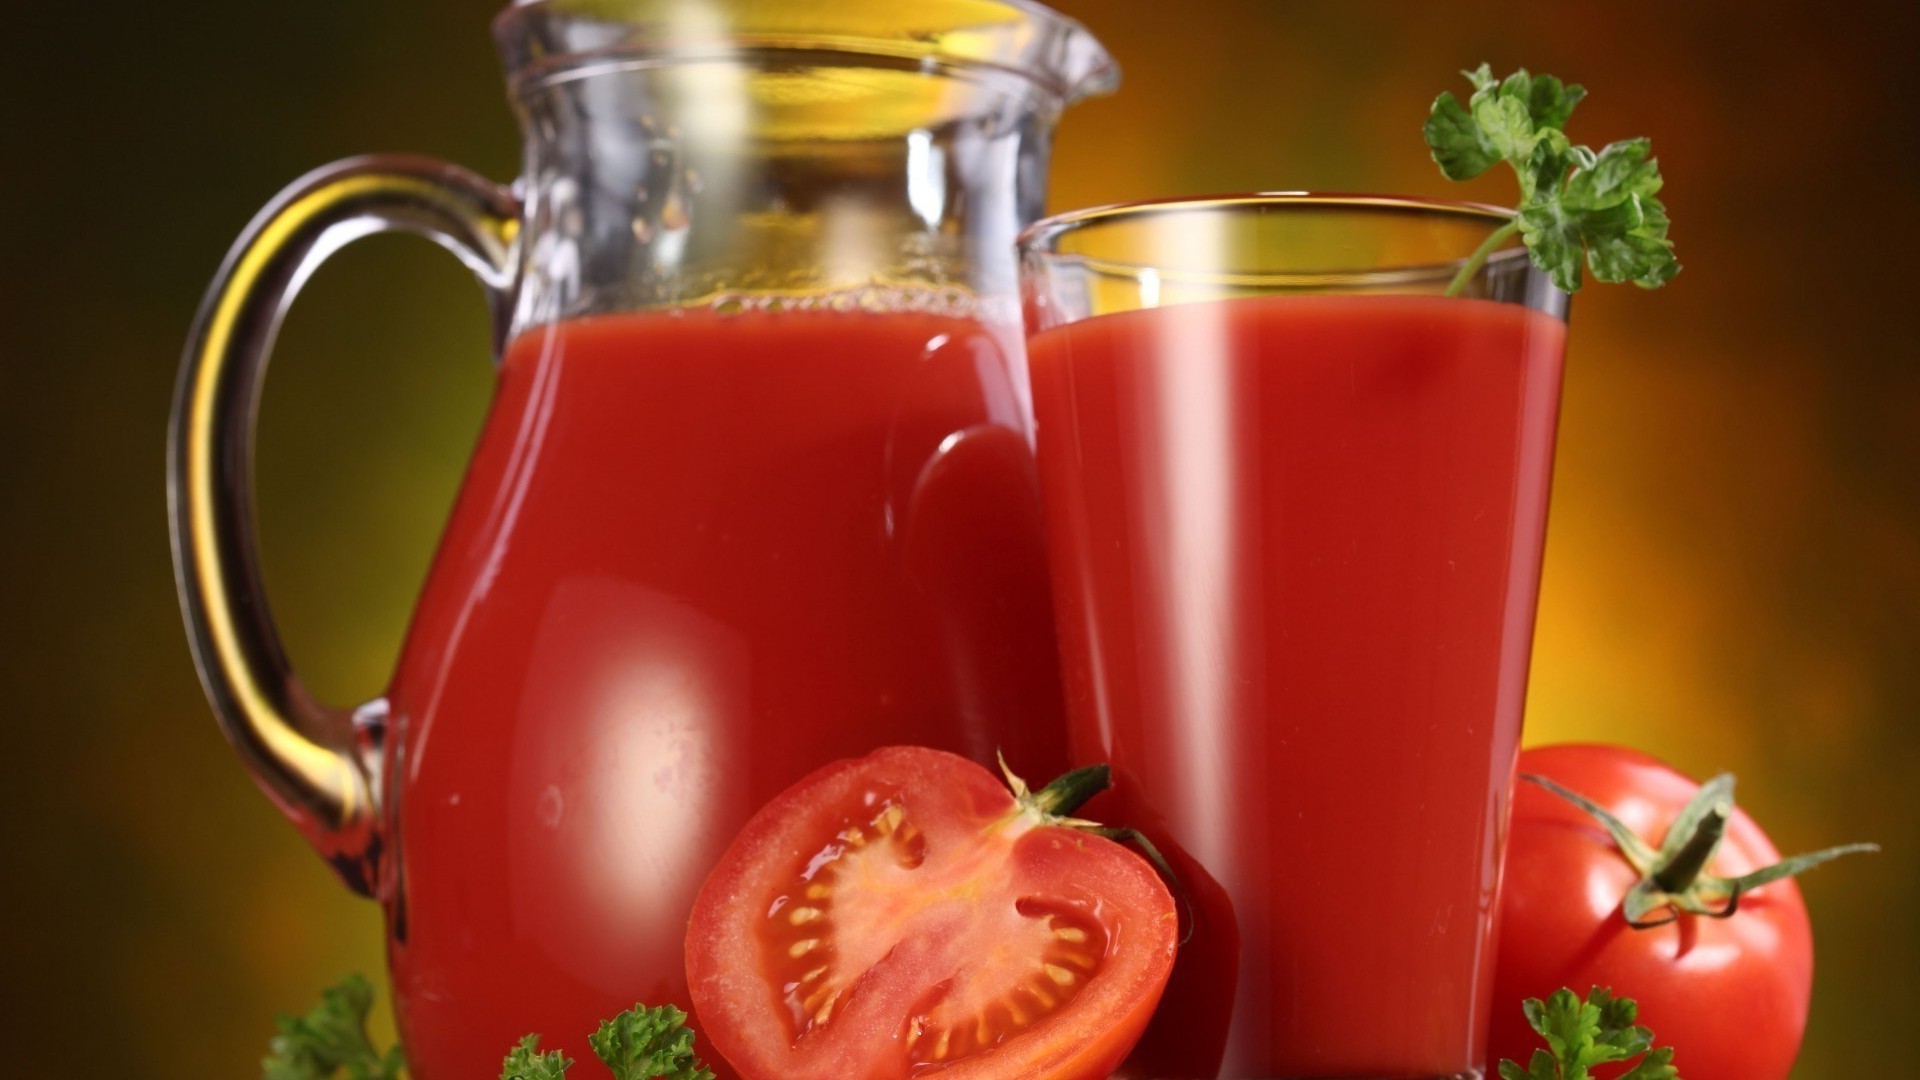 juice food health leaf vegetable drink healthy fruit tomato hot juicy